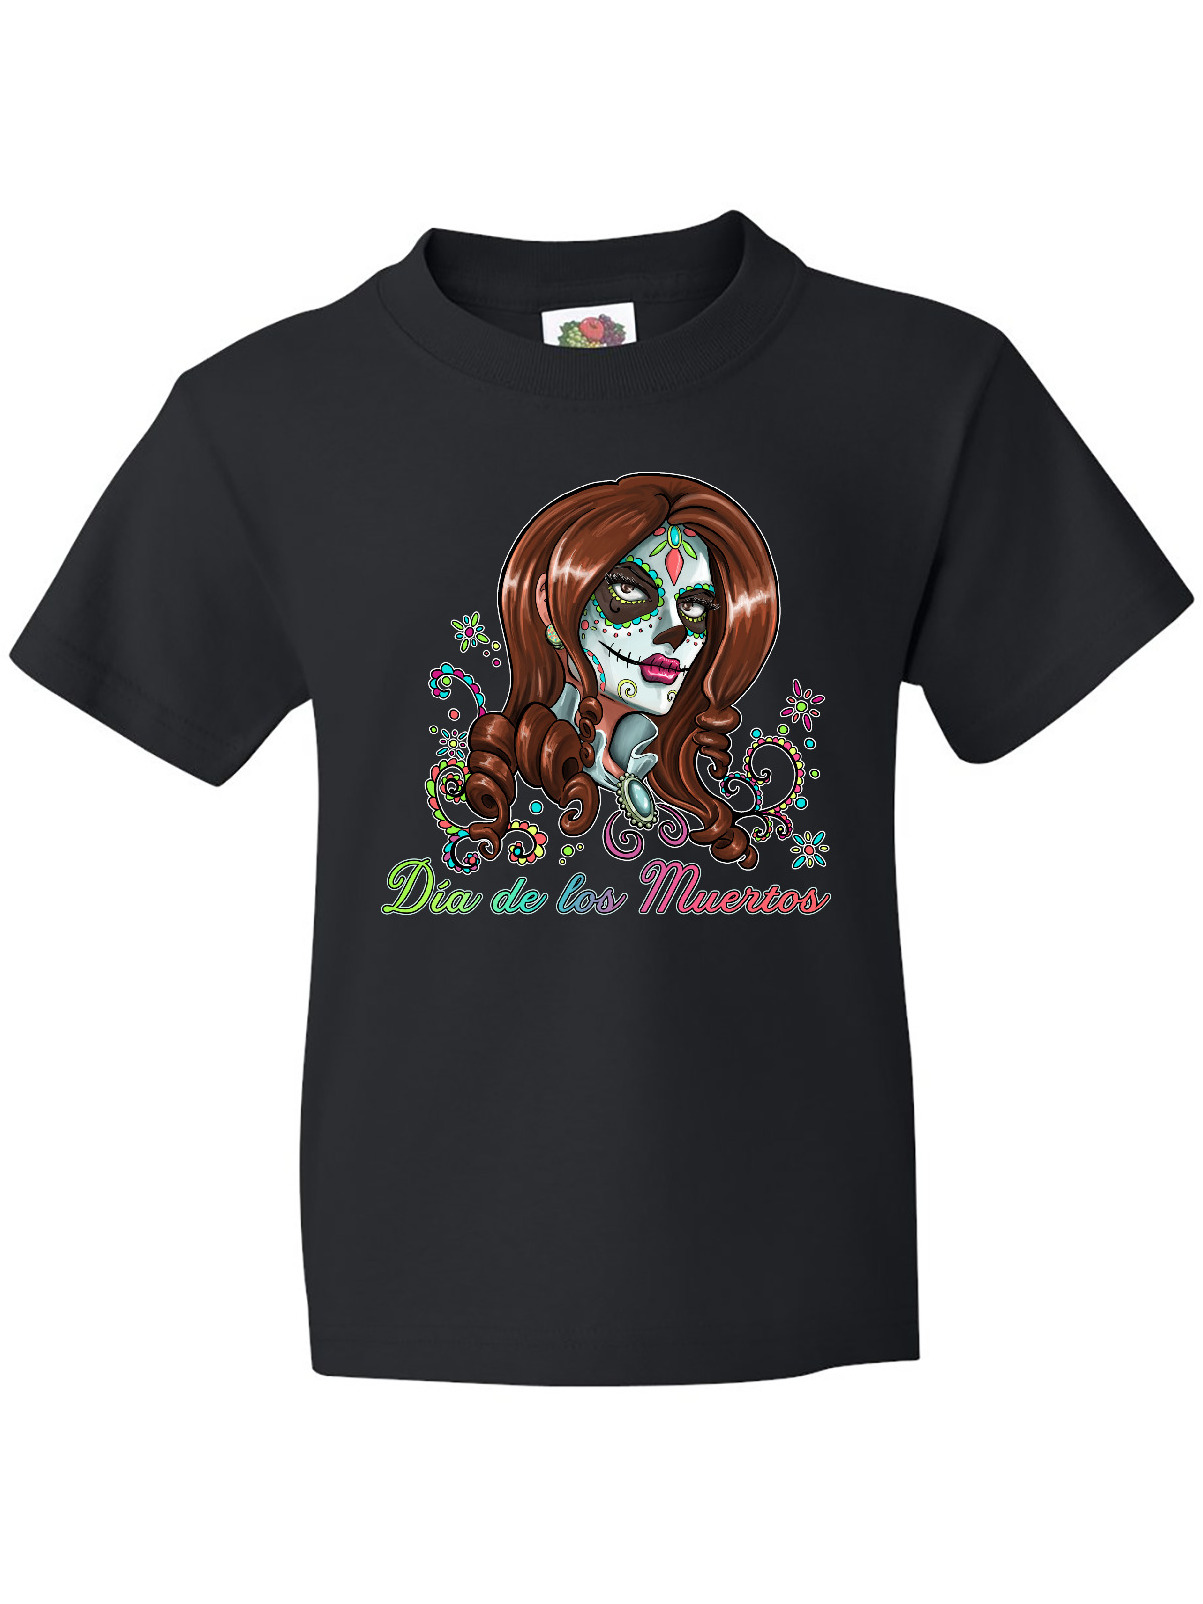 Inktastic Día de los Muertos Woman in Sugar Skull Makeup Youth T-Shirt - image 1 of 4